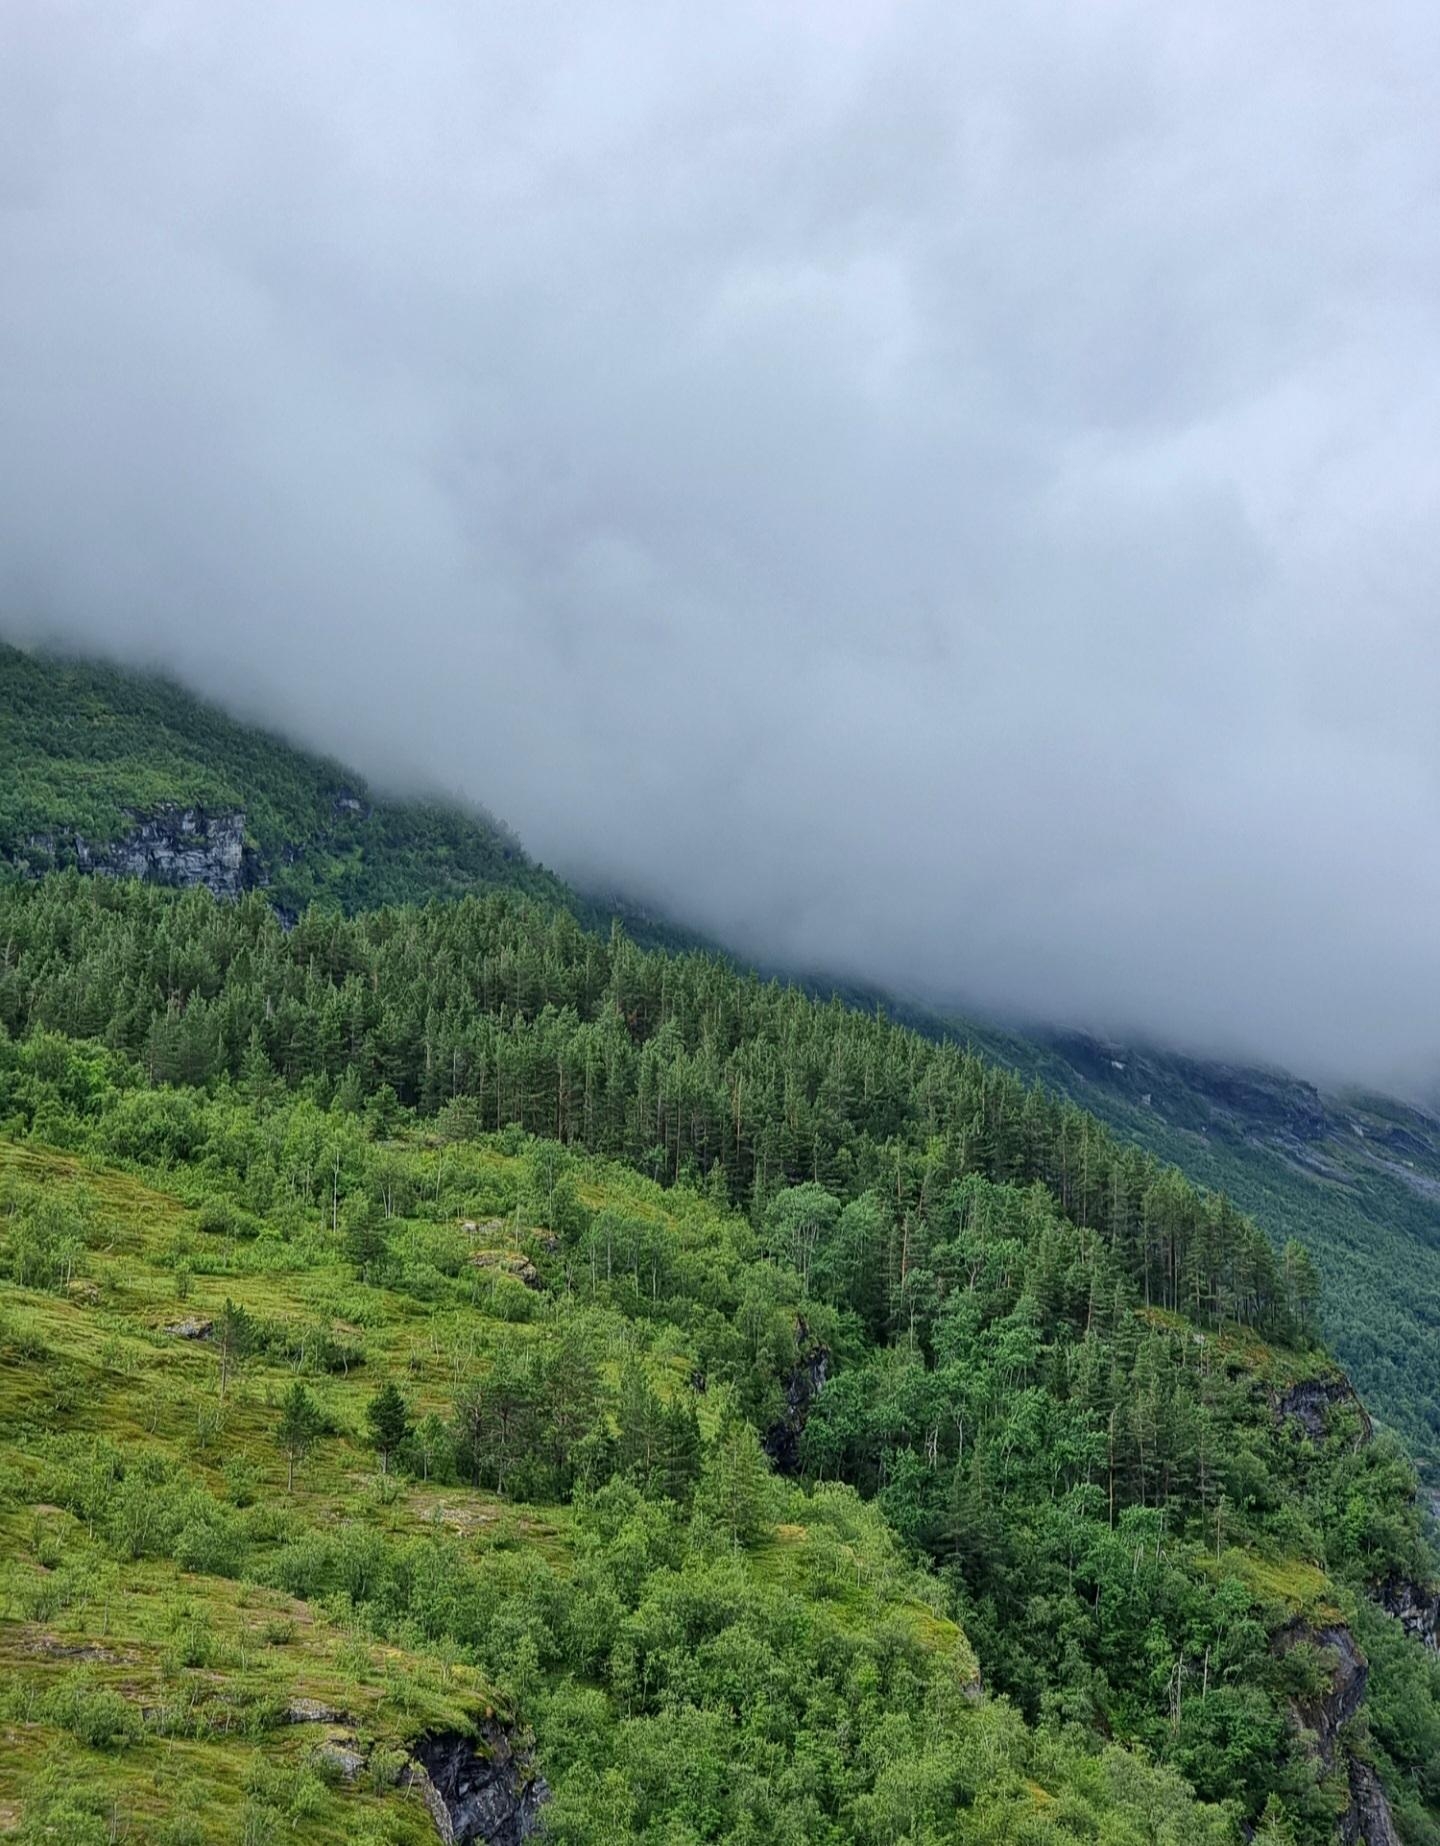 Mag diese mystischen Wolken 😇..es war einfach irre schön! #Natur in #Norwegen #Impression #exploretheworld #scandi 